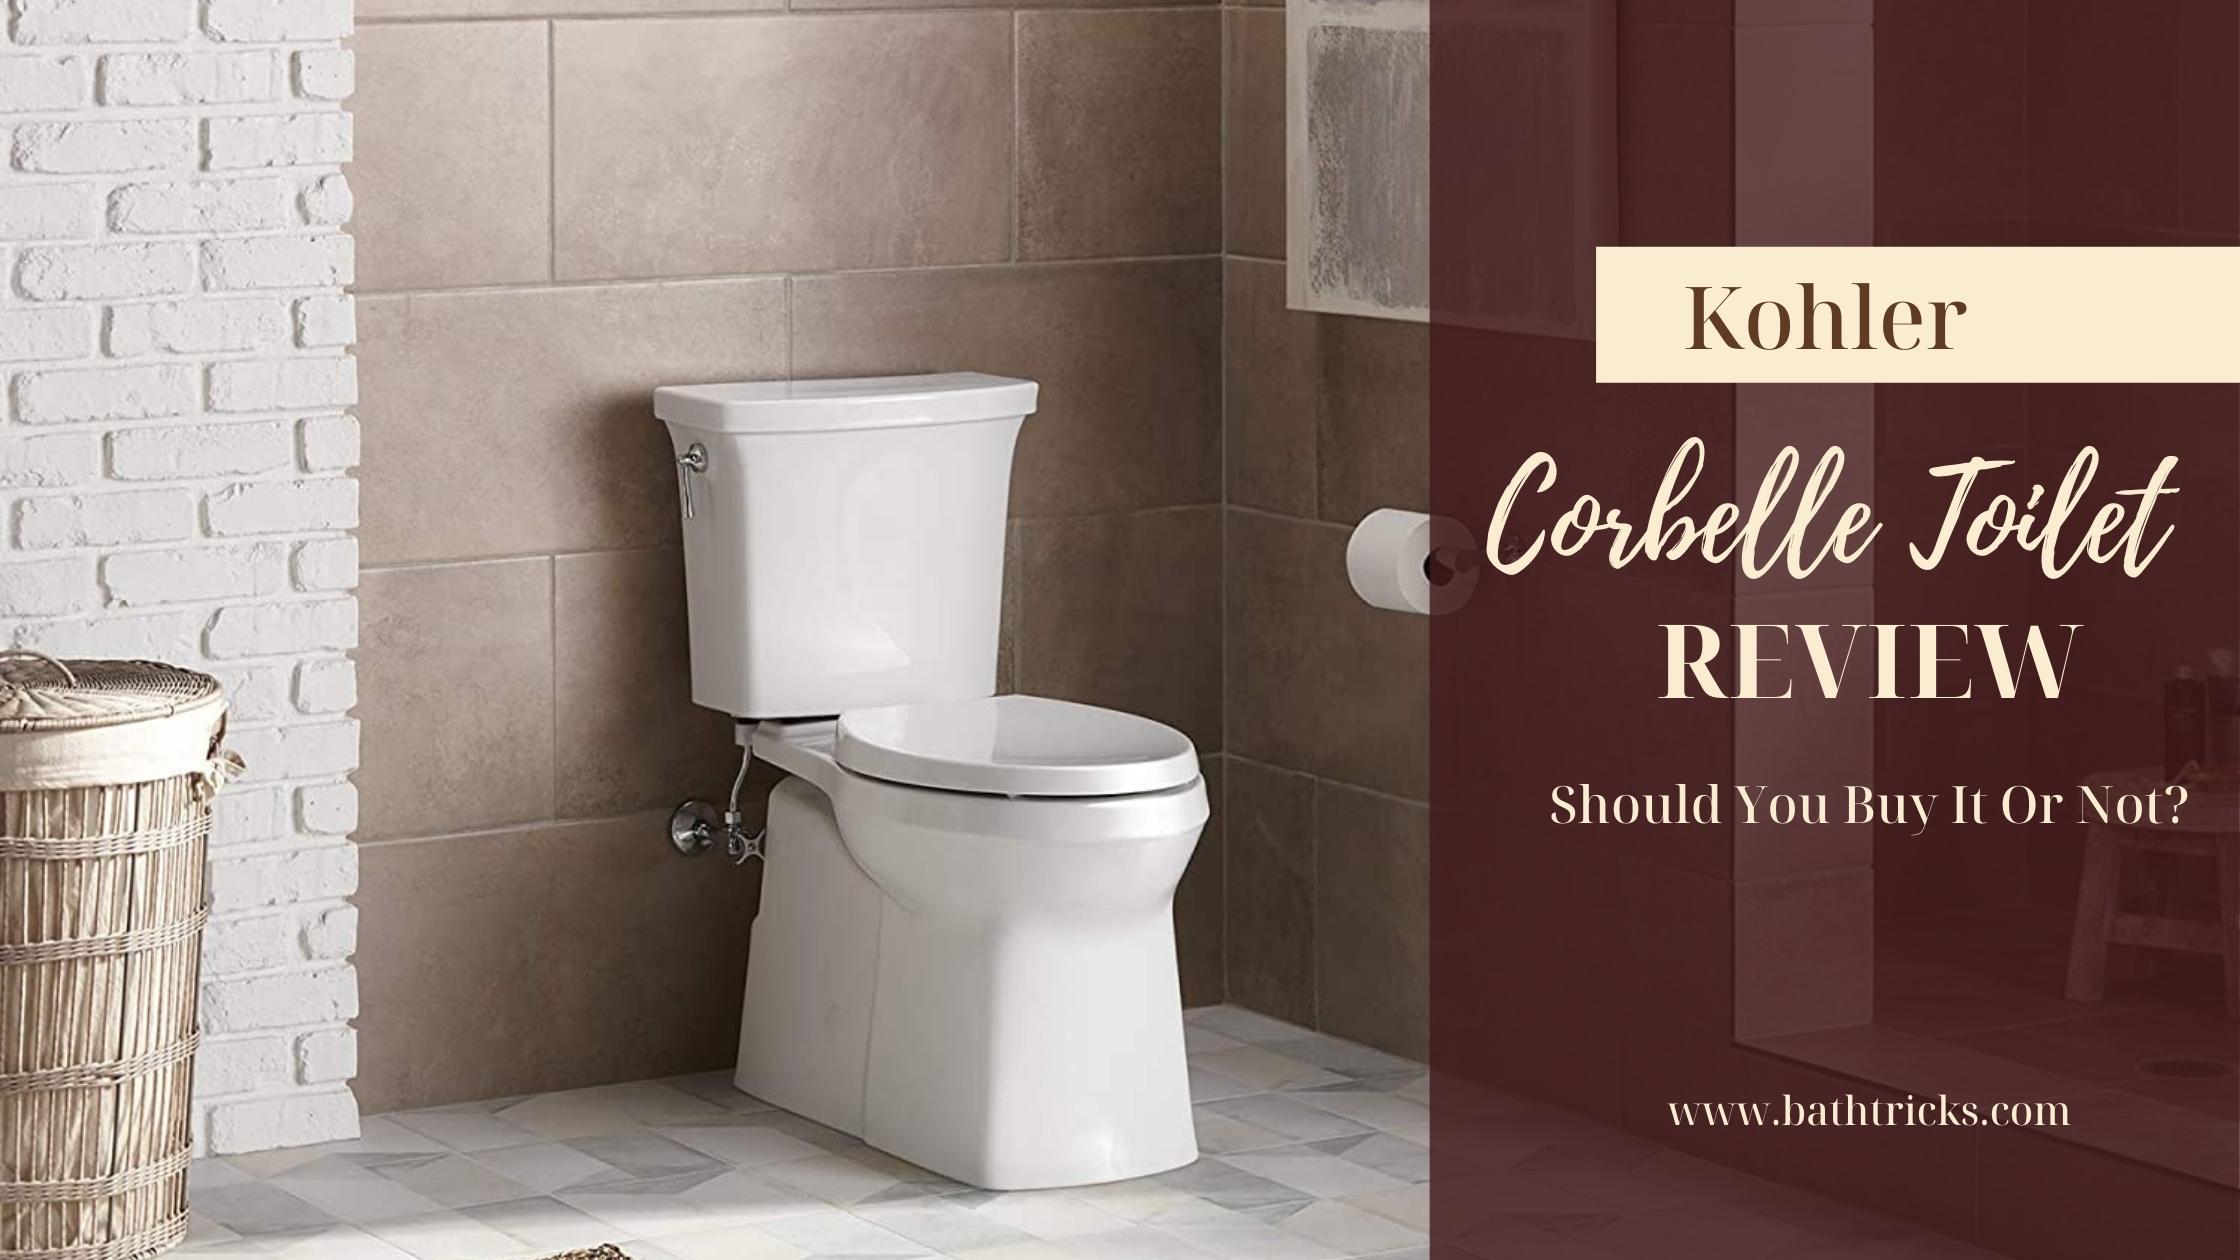 Kohler Corbelle Toilet Review